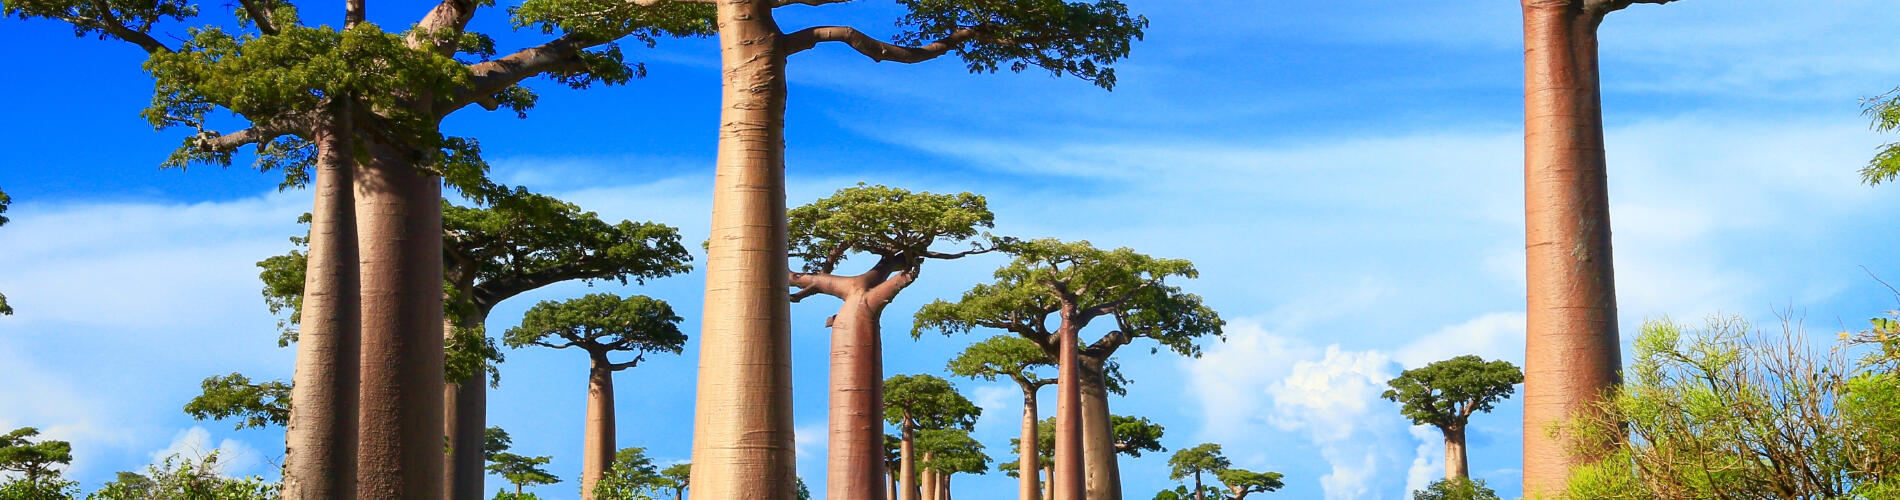 Мадагаскар, Африка